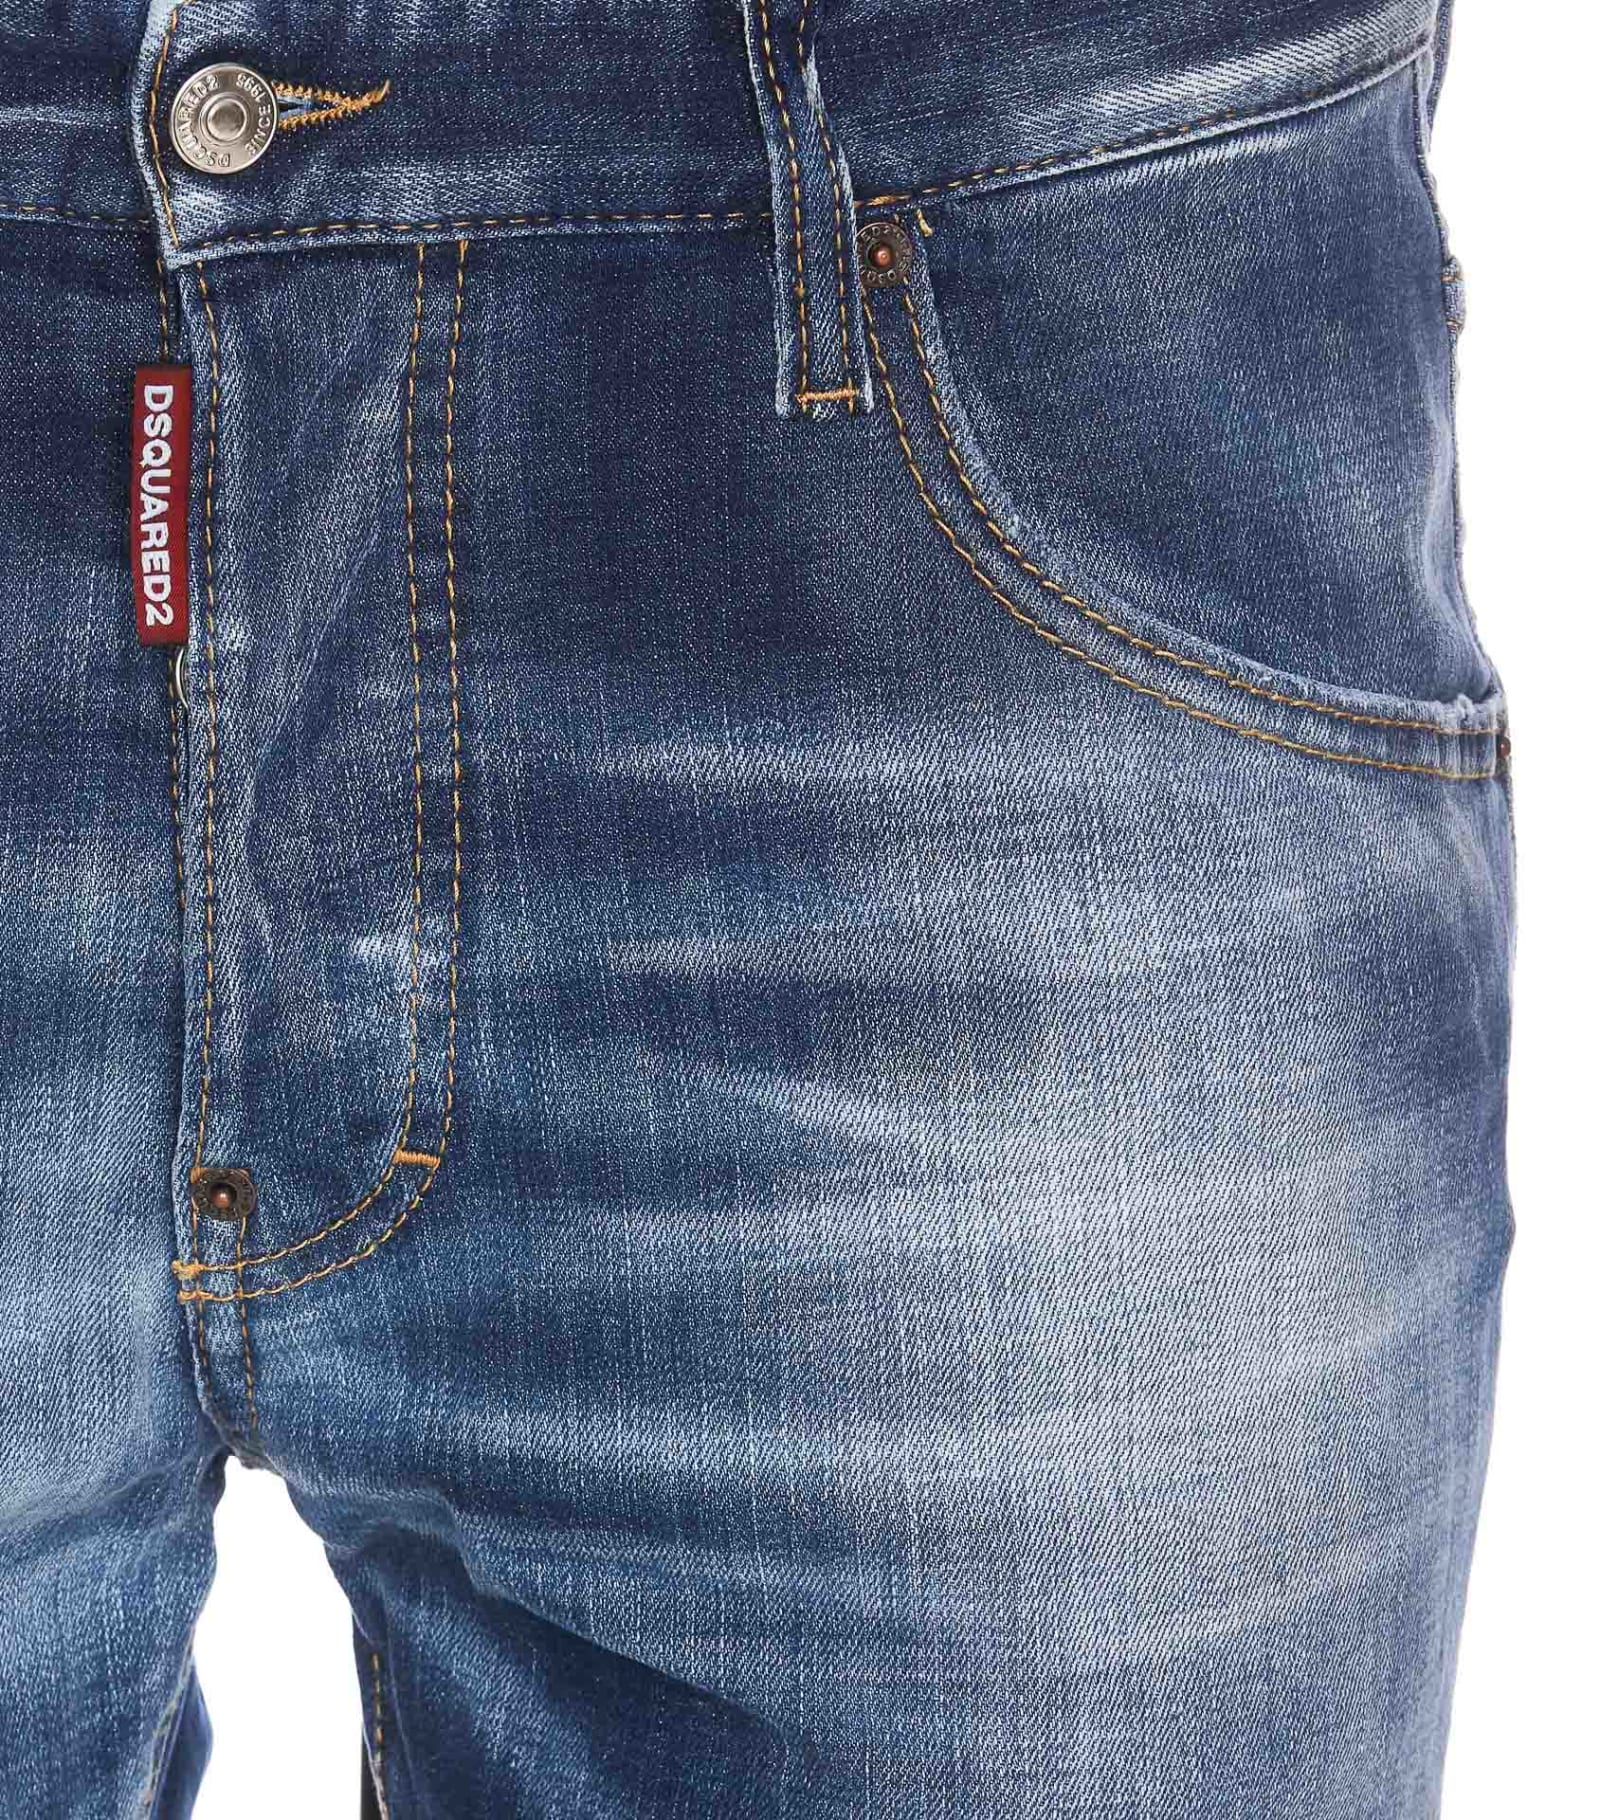 Shop Dsquared2 Skater Jean Jeans In Denim